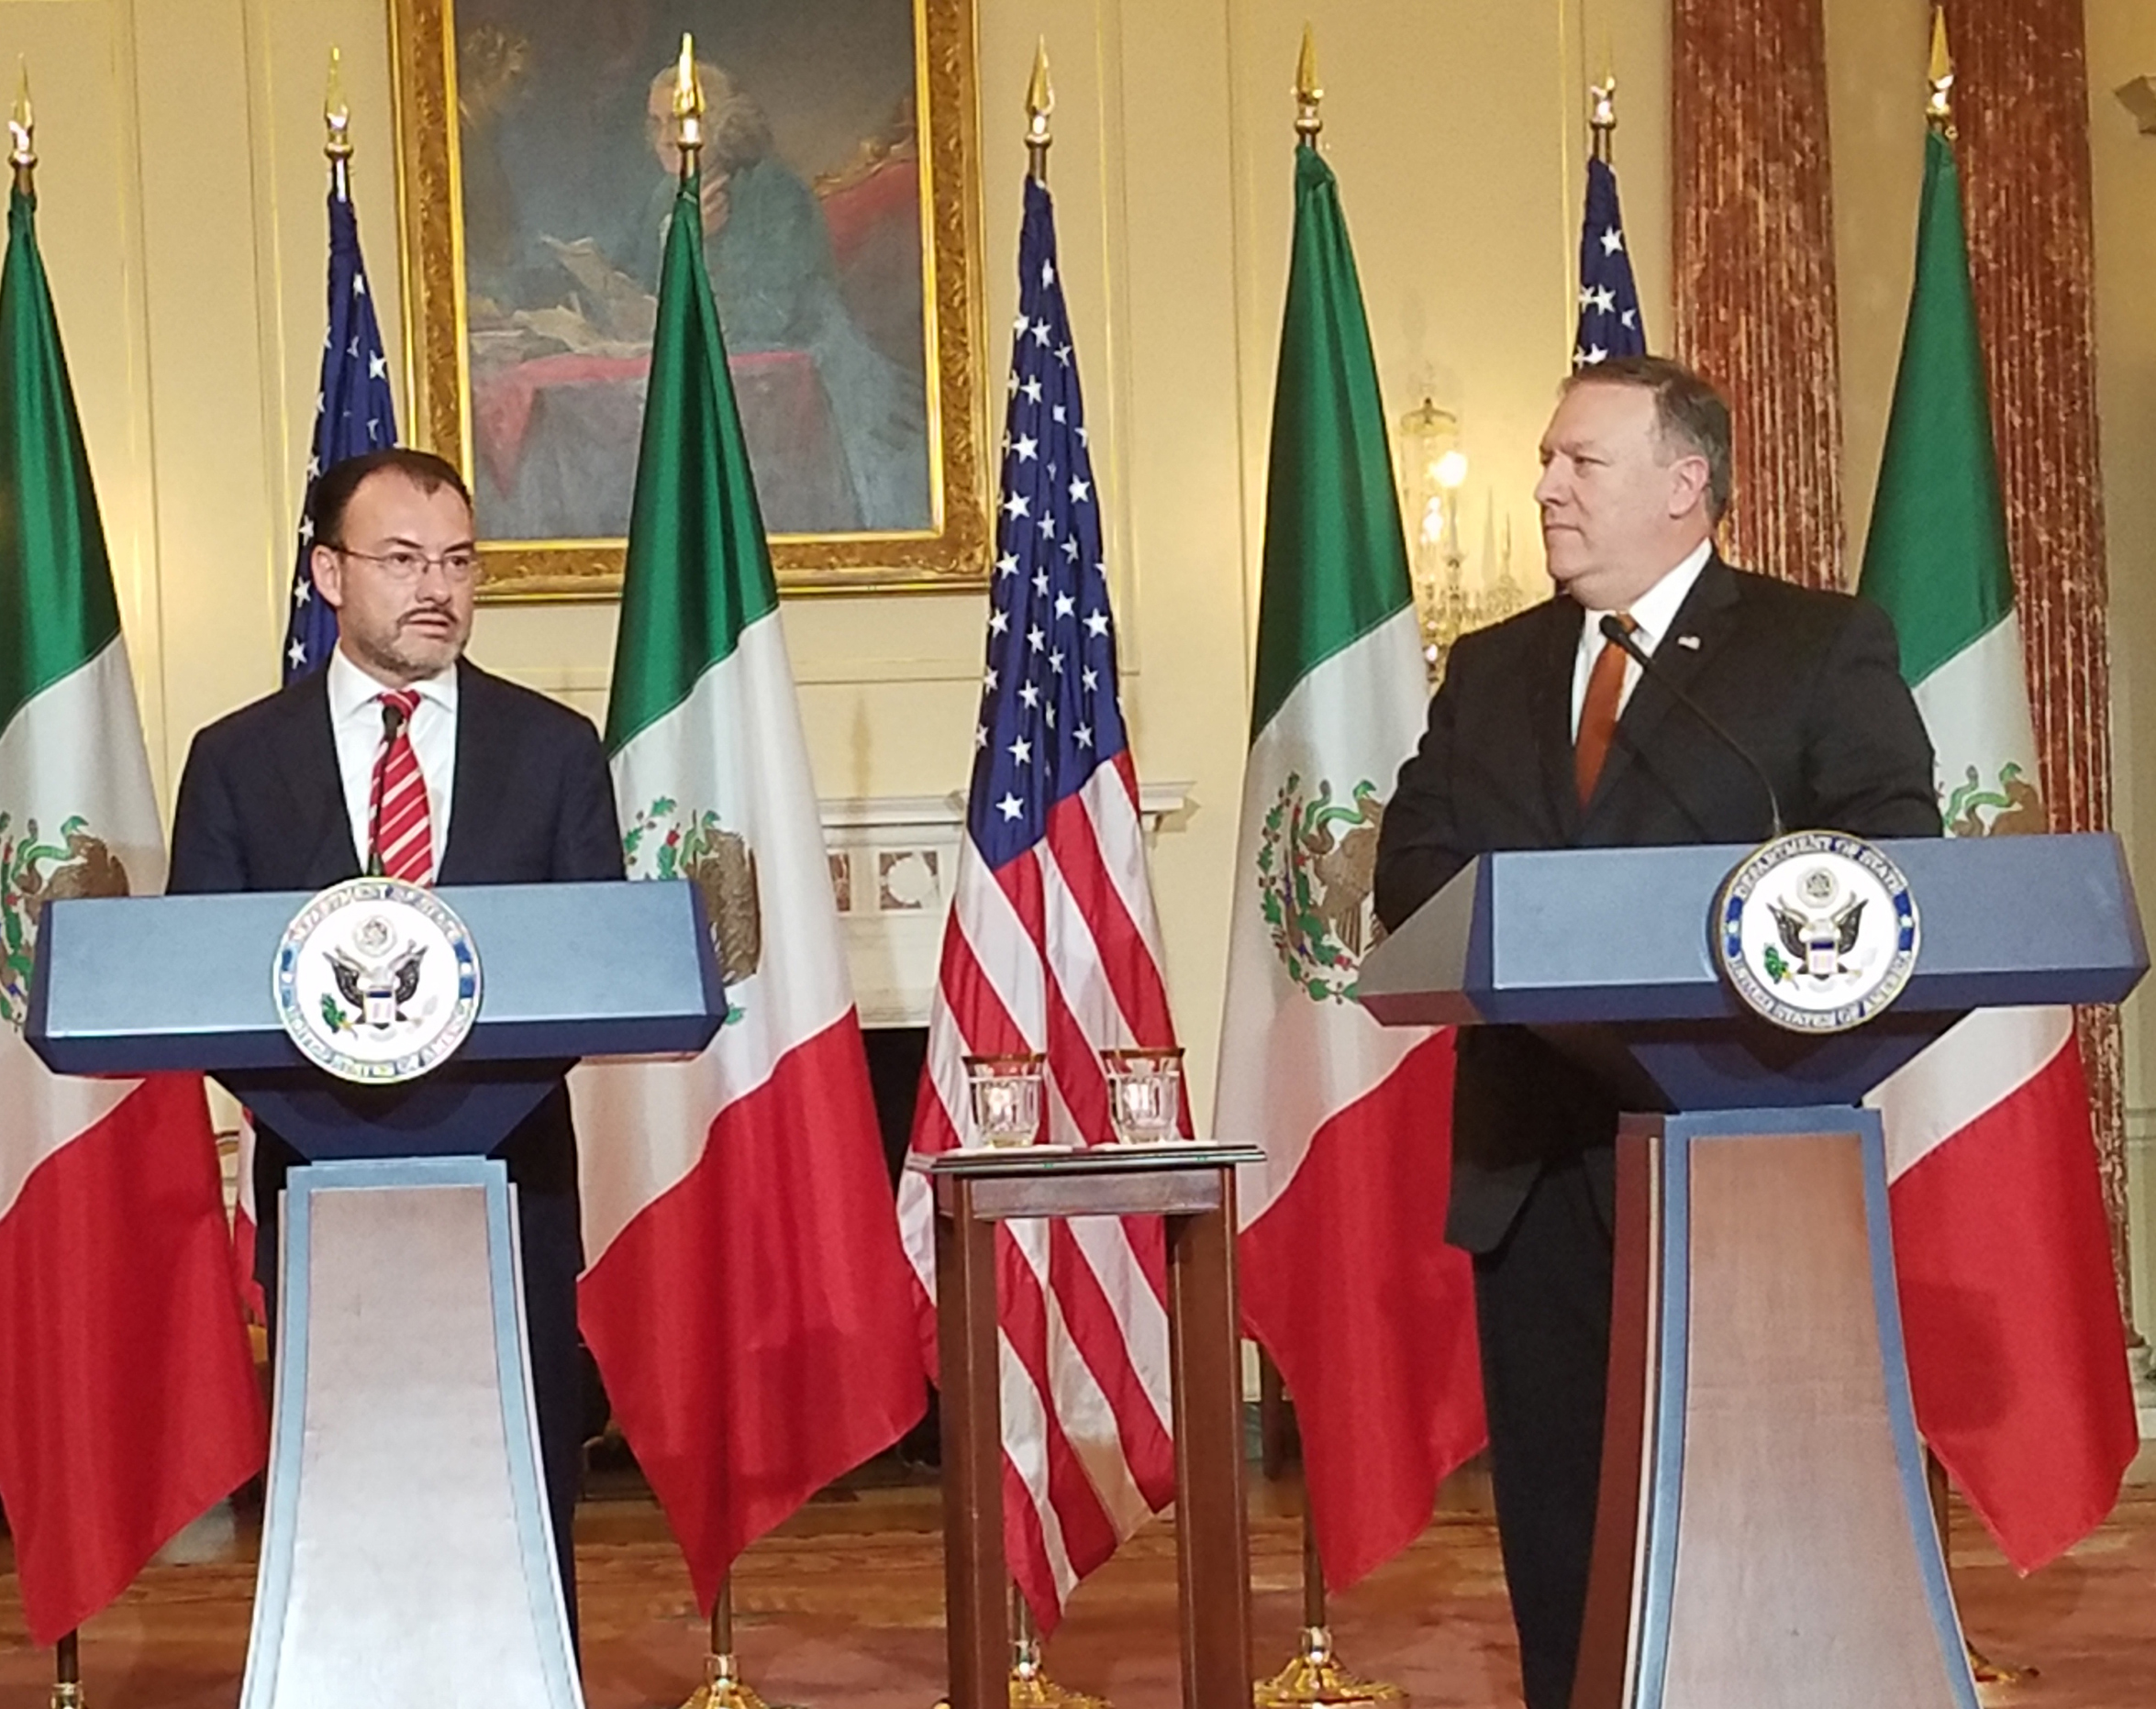 México presentará queja formal a EEUU por afirmación de Trump contra migrantes